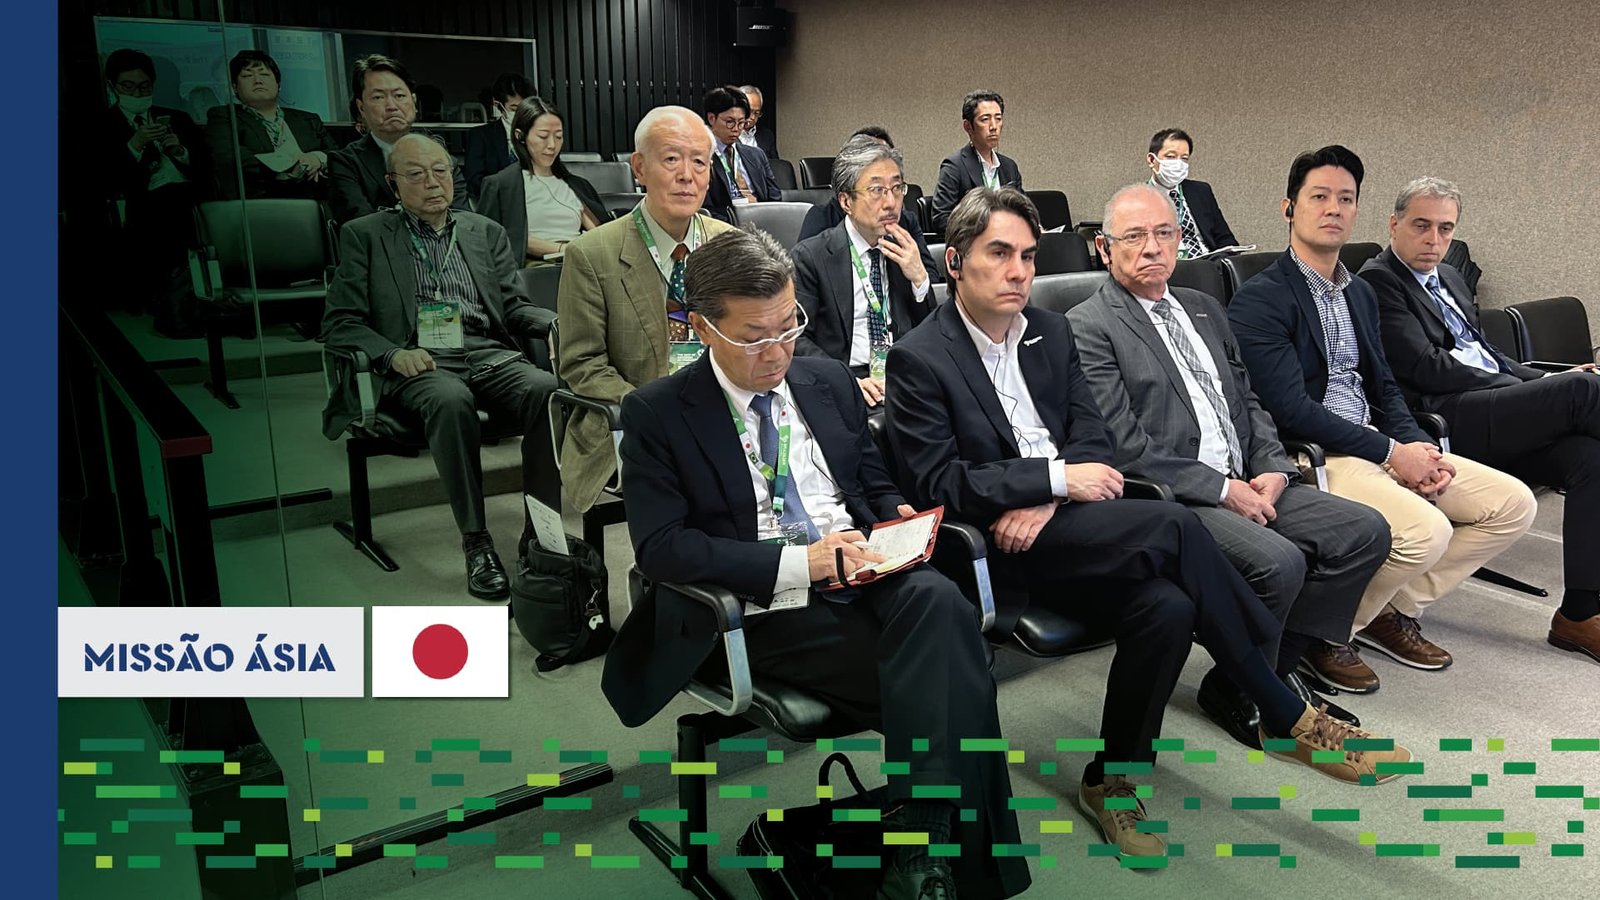 Missão Ásia: Business Connection Japão abre diálogo e potencializa parcerias comerciais para o rendering brasileiro